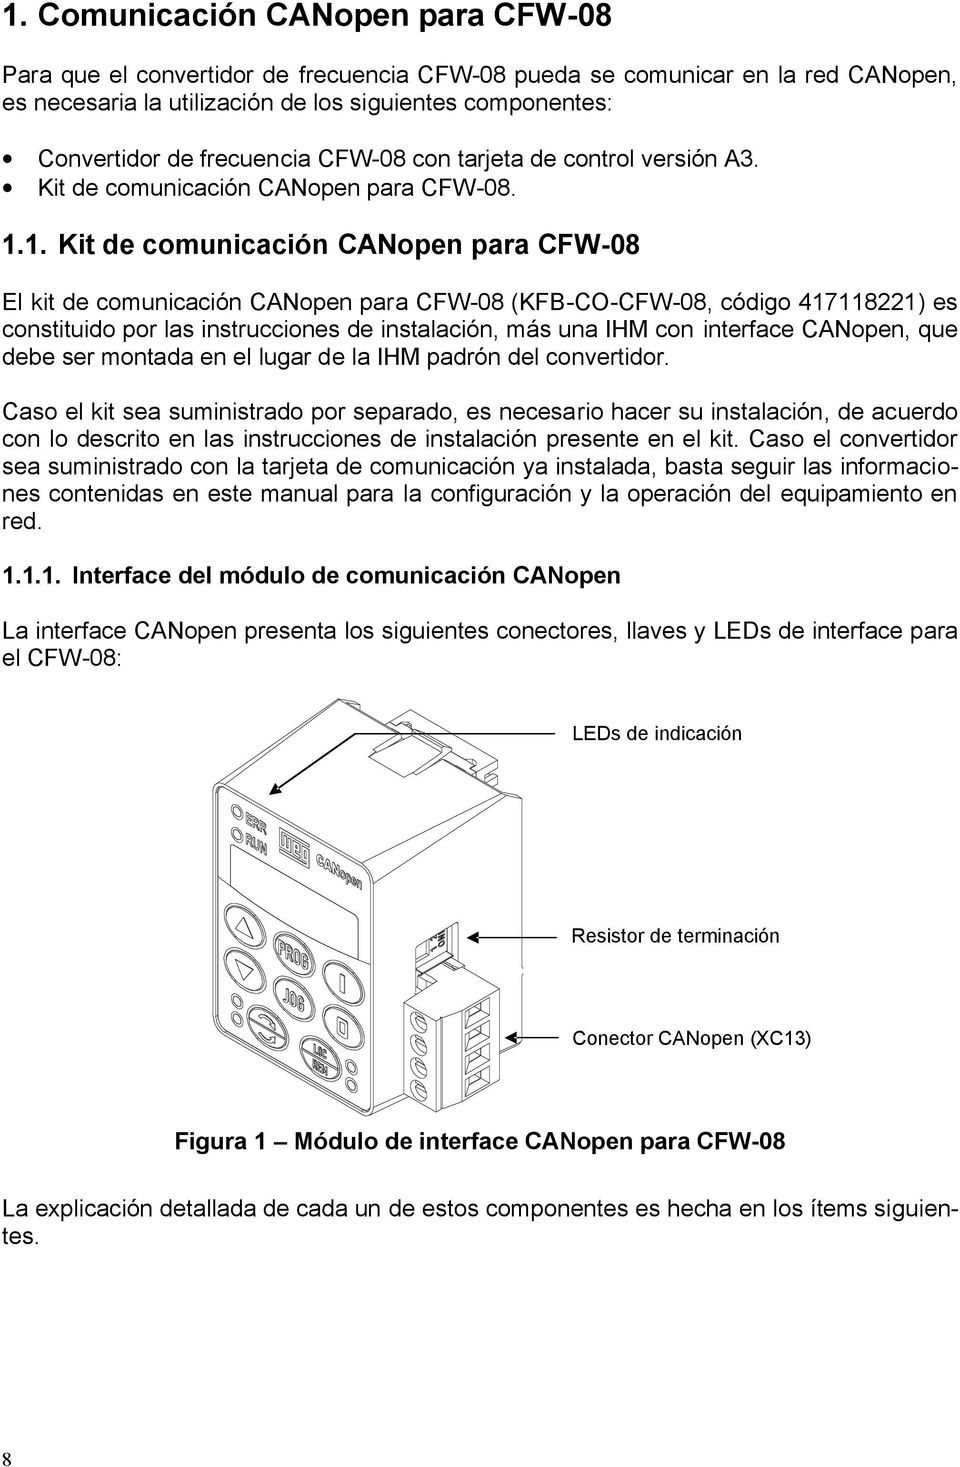 1. Kit de comunicación CANopen para CFW-08 El kit de comunicación CANopen para CFW-08 (KFB-CO-CFW-08, código 417118221) es constituido por las instrucciones de instalación, más una IHM con interface